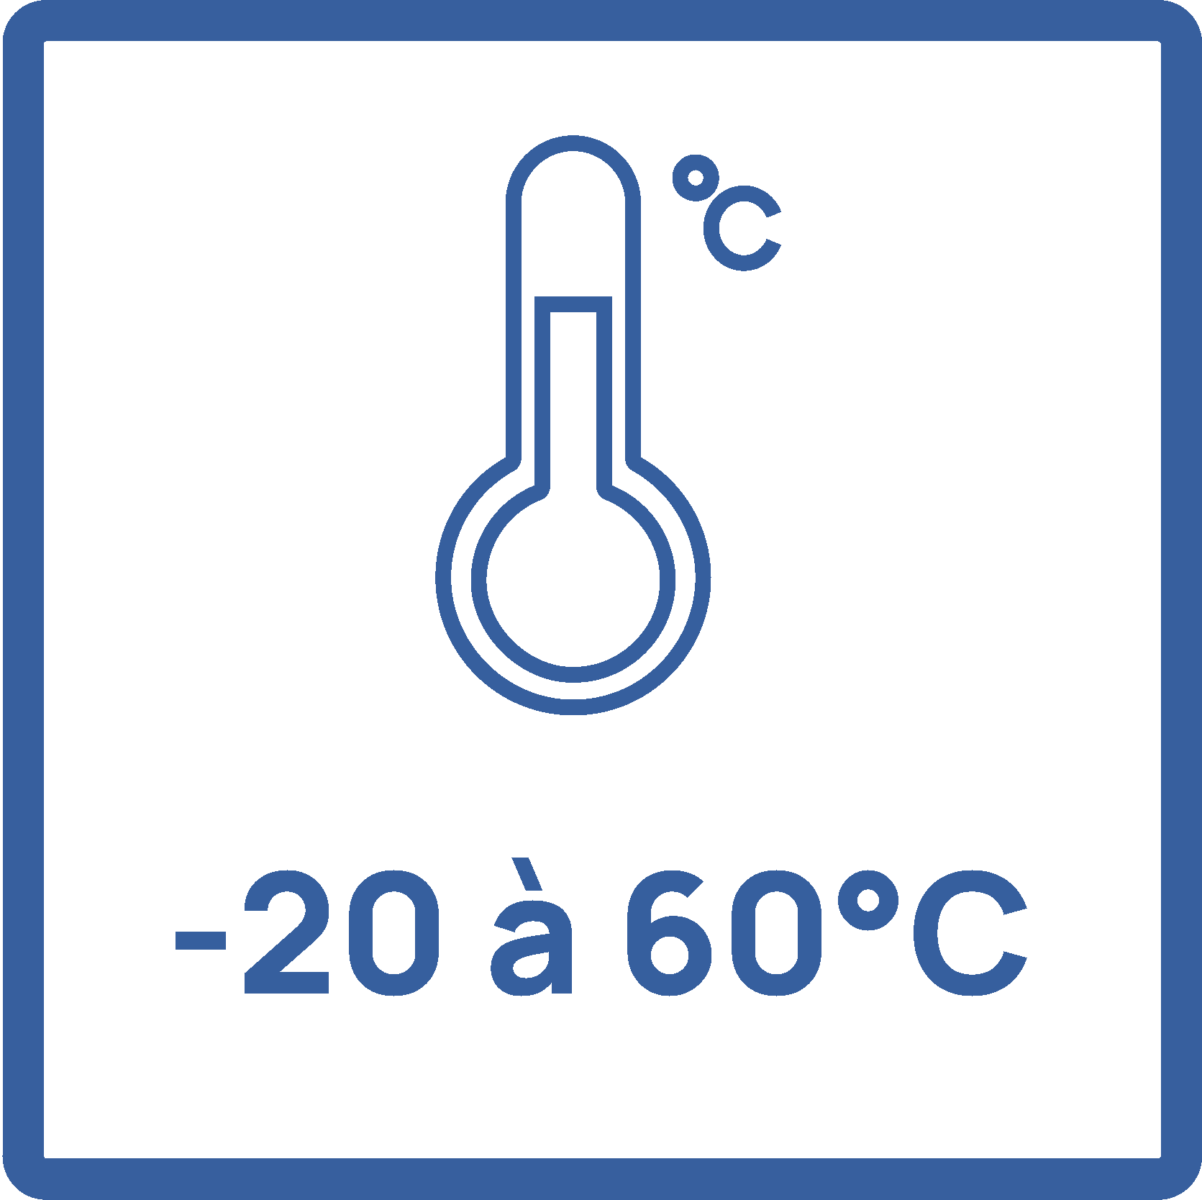 -20 à 60°C